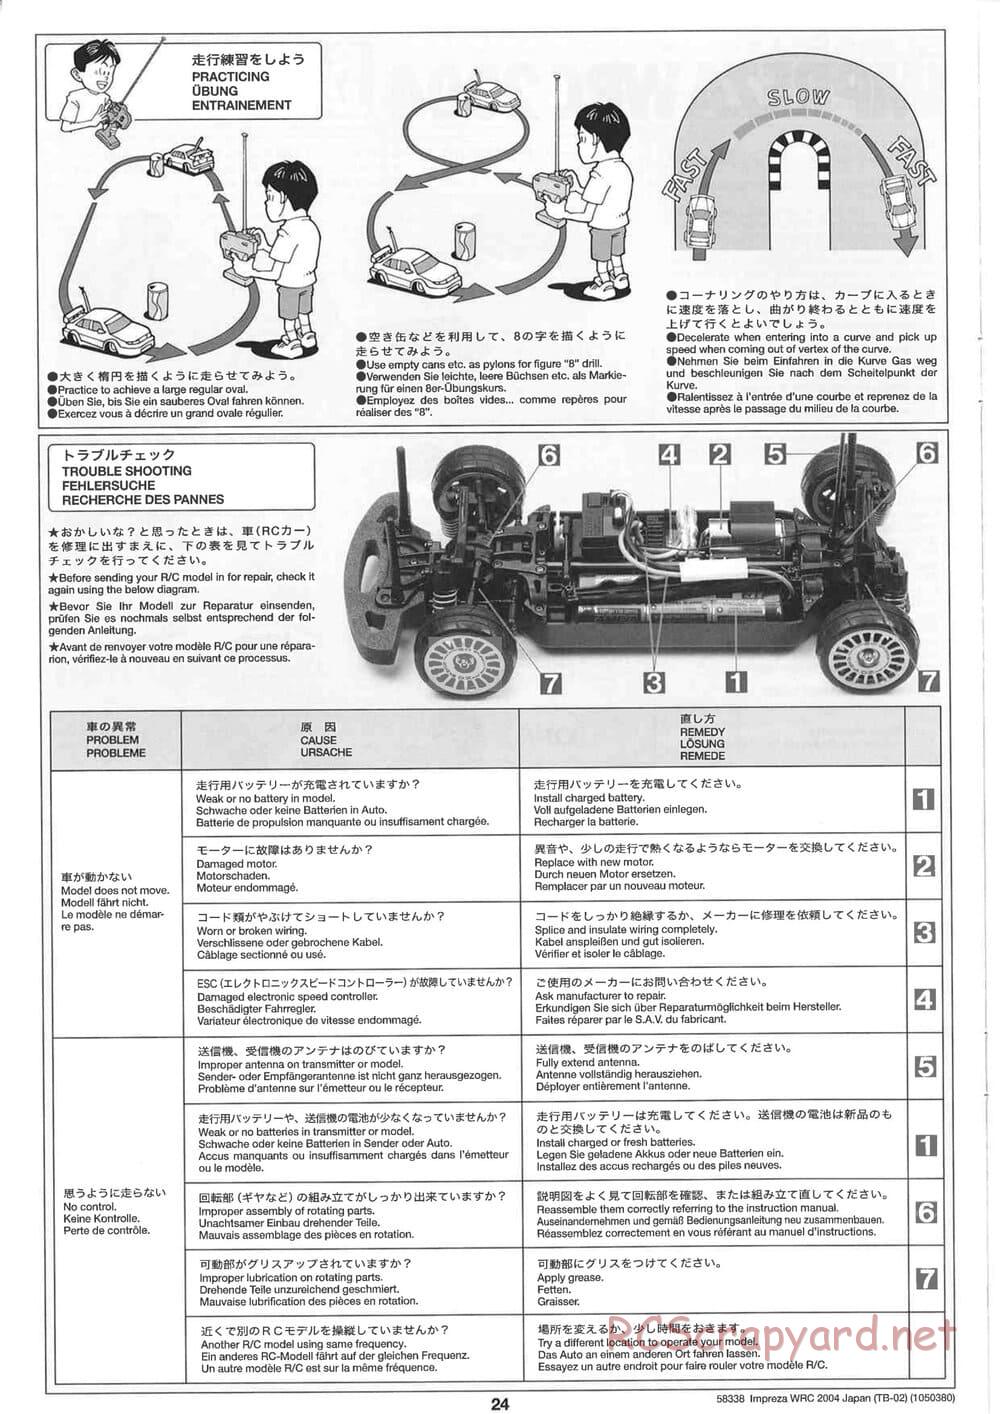 Tamiya - Subaru Impreza WRC 2004 Rally Japan - TB-02 Chassis - Manual - Page 24